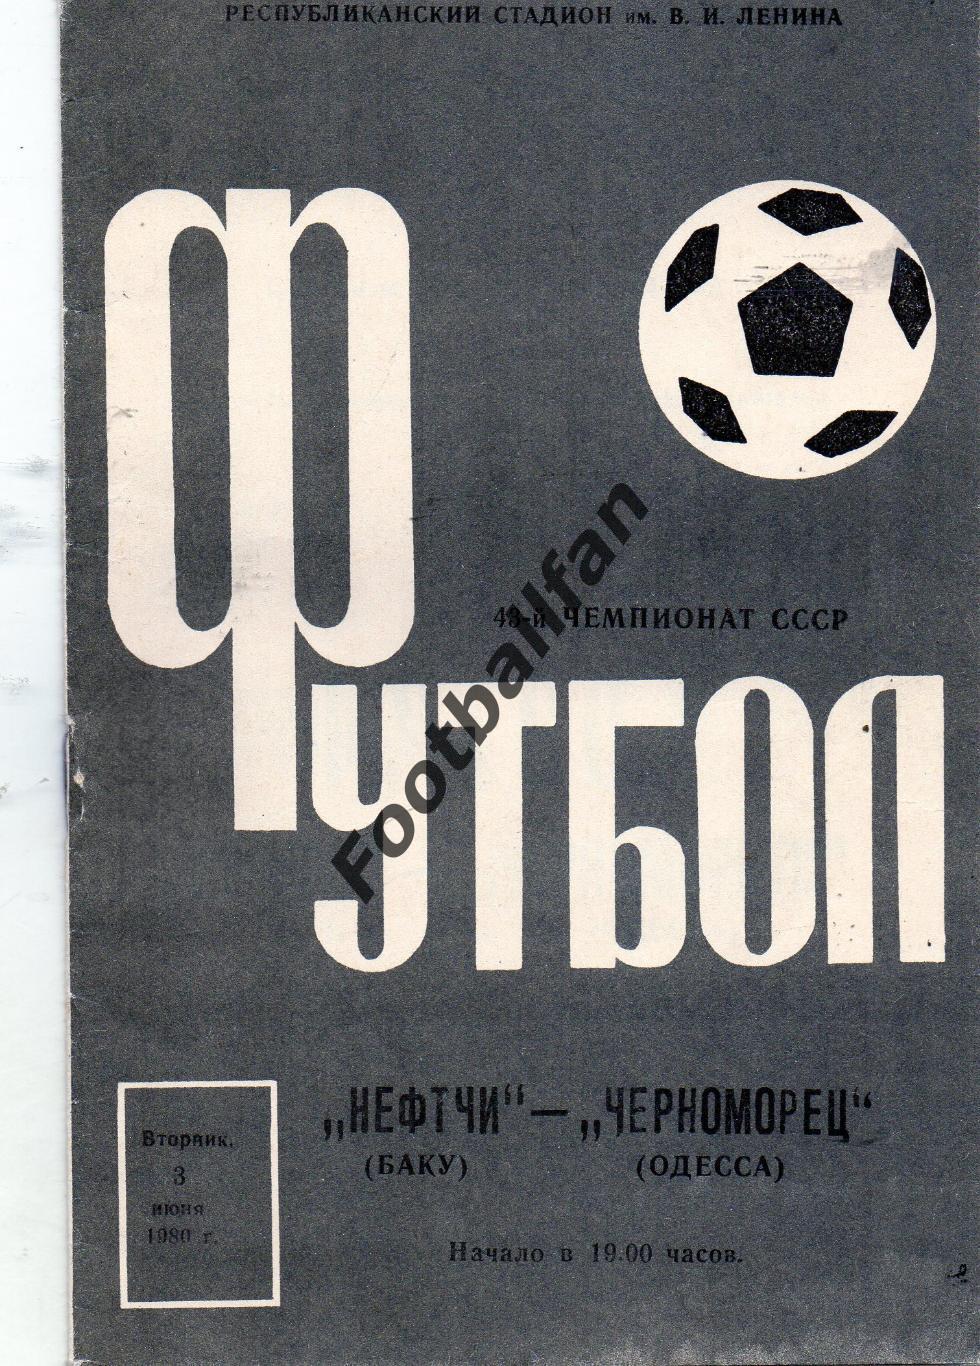 Нефтчи Баку - Черноморец Одесса 1980.